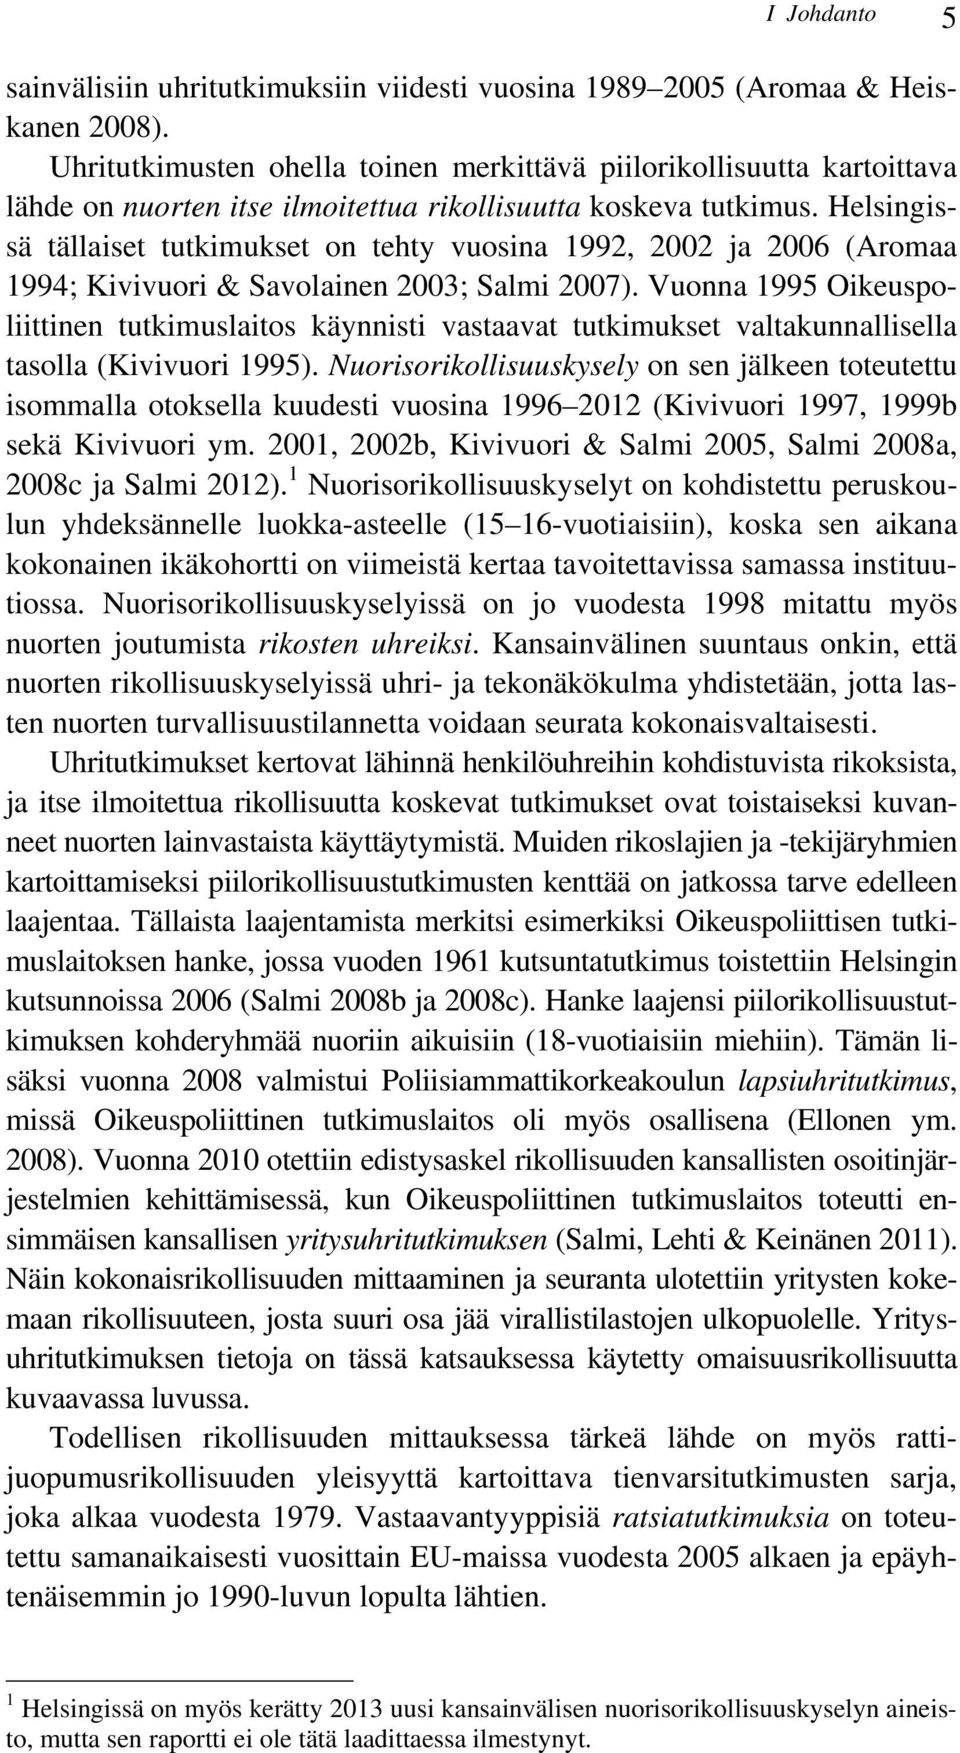 Helsingissä tällaiset tutkimukset on tehty vuosina 1992, 2002 ja 2006 (Aromaa 1994; Kivivuori & Savolainen 2003; Salmi 2007).